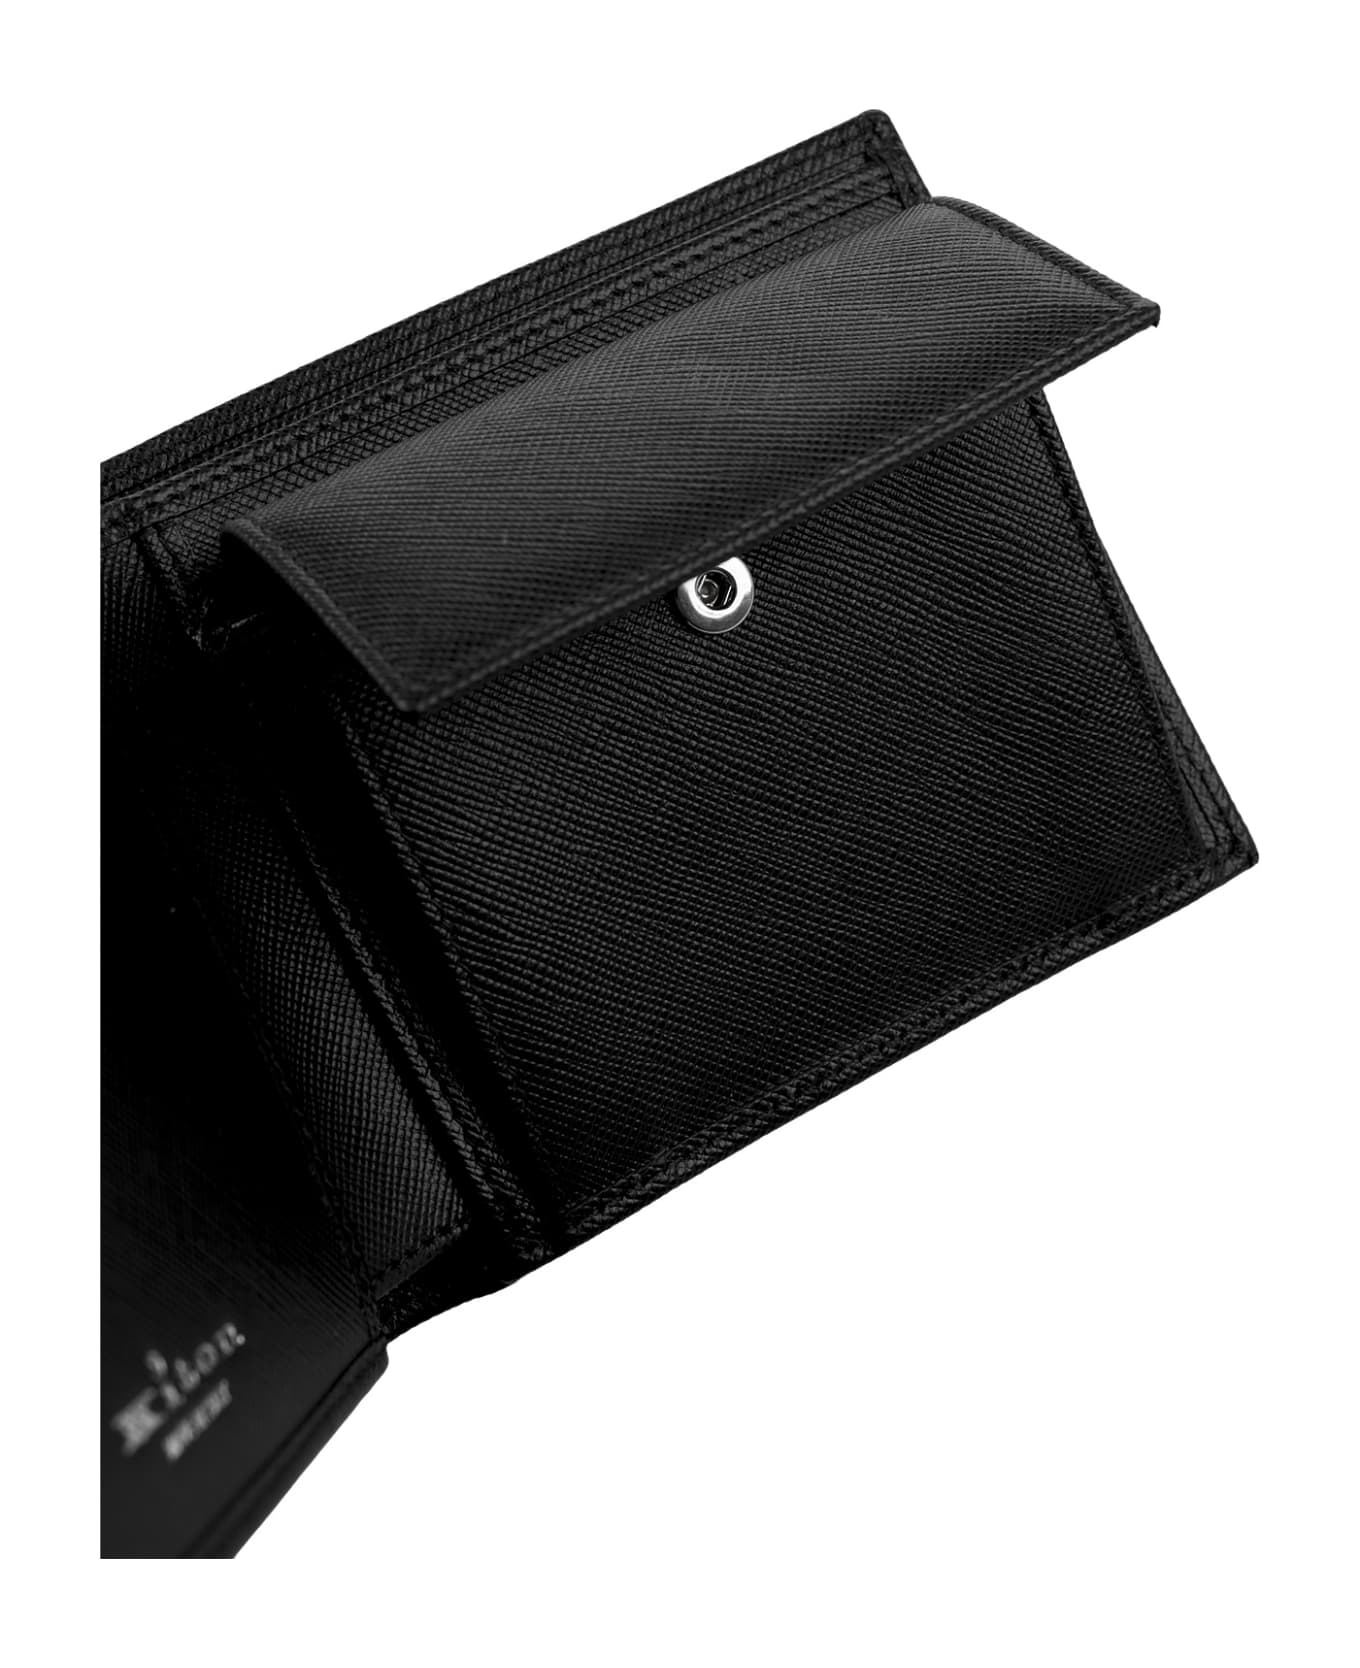 Kiton Black Leather Wallet With Logo - Black